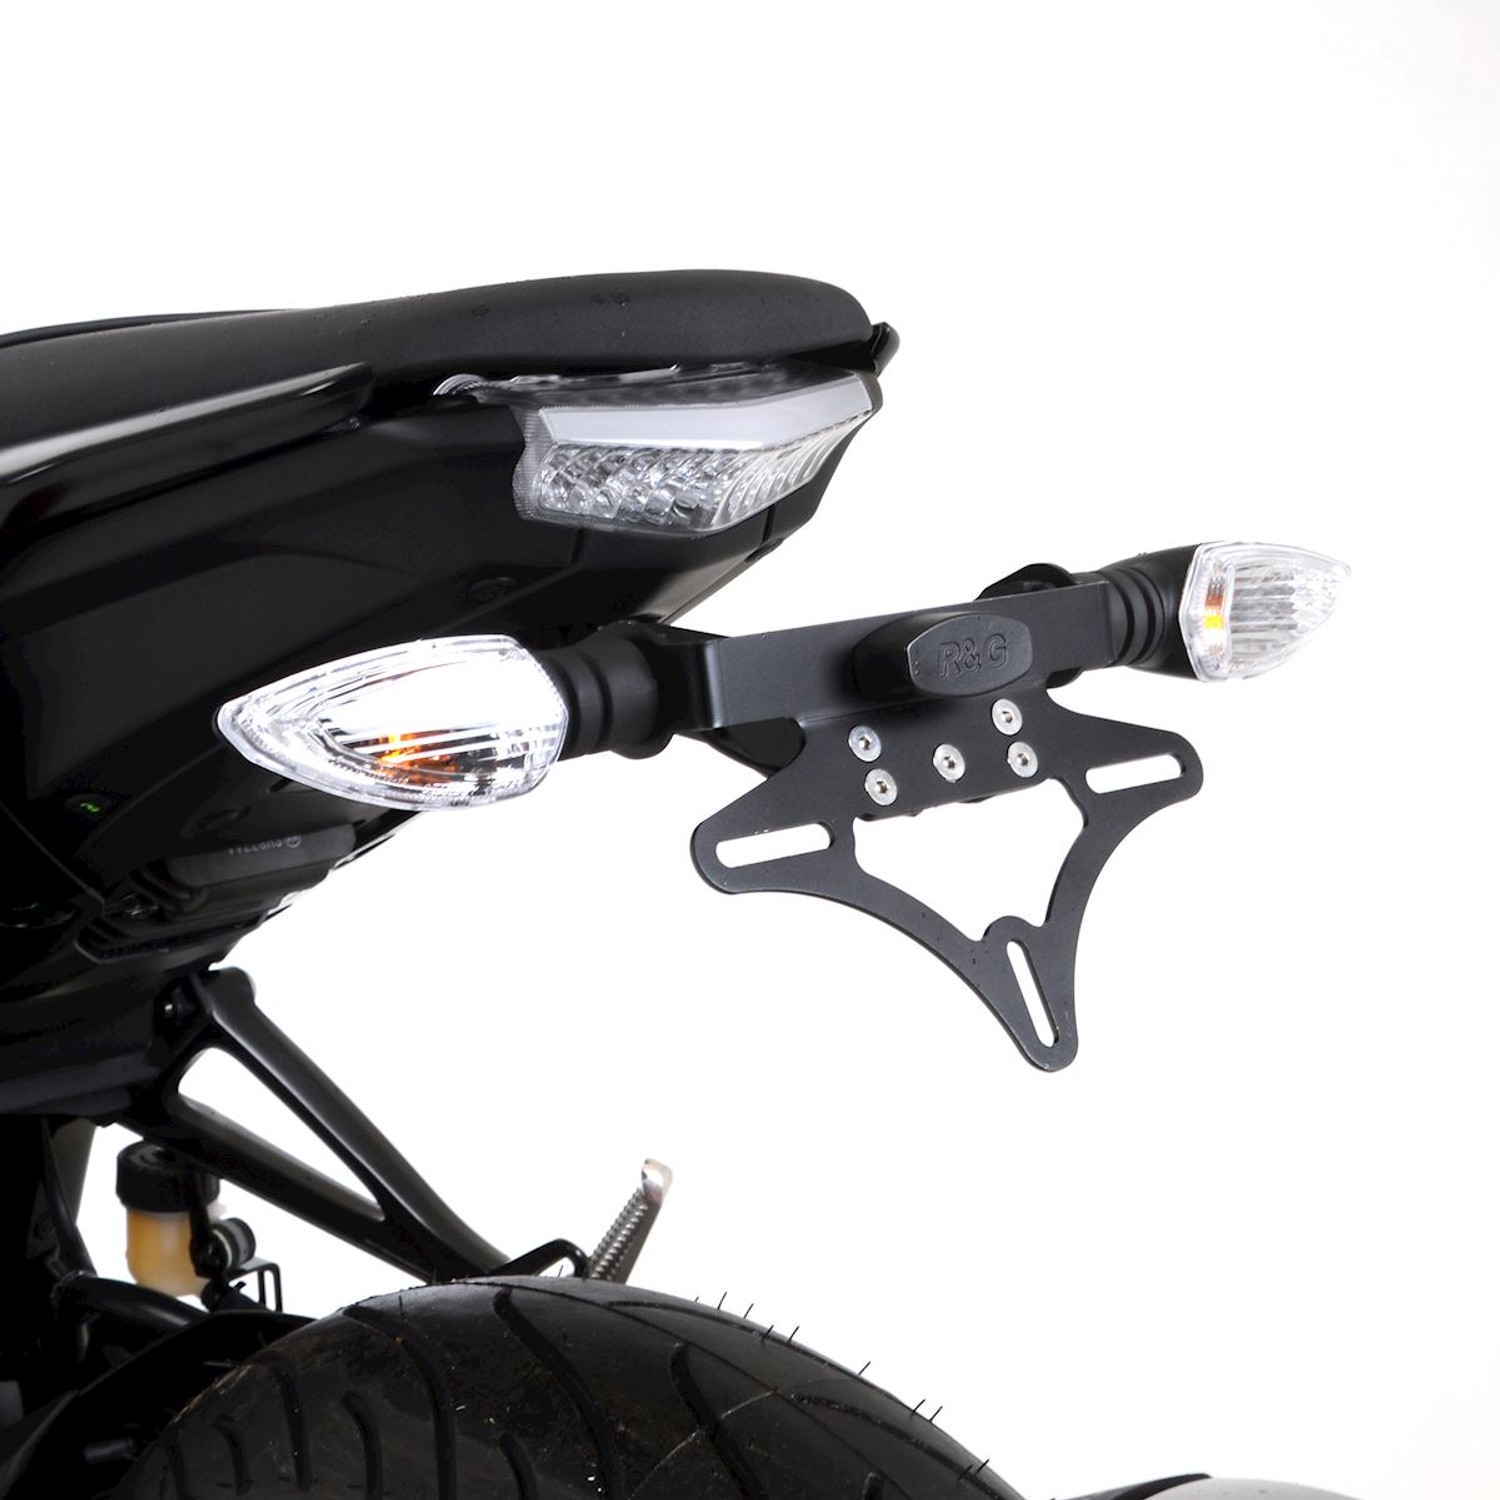 R&G Kennzeichenhalter Yamaha MT-125 Licence Plate Holder Tail Tidy 